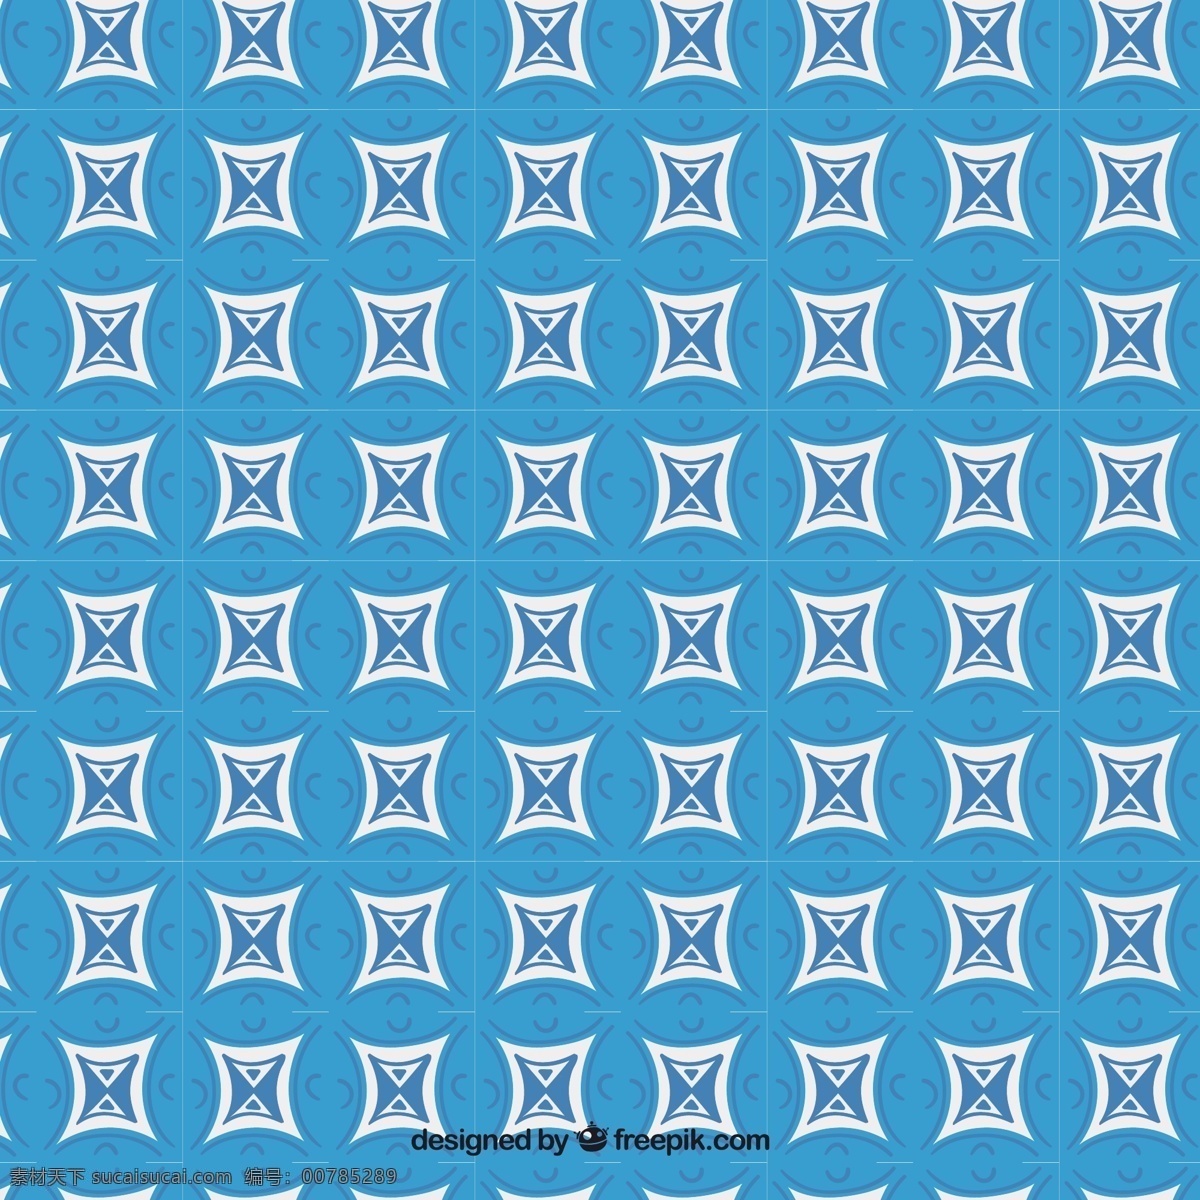 蓝色 几何 图案 背景 模式 抽象背景 海报 抽象 蓝色背景 壁纸 几何背景 几何图案 装饰 图案背景 抽象图案 蓝色图案 图案设计